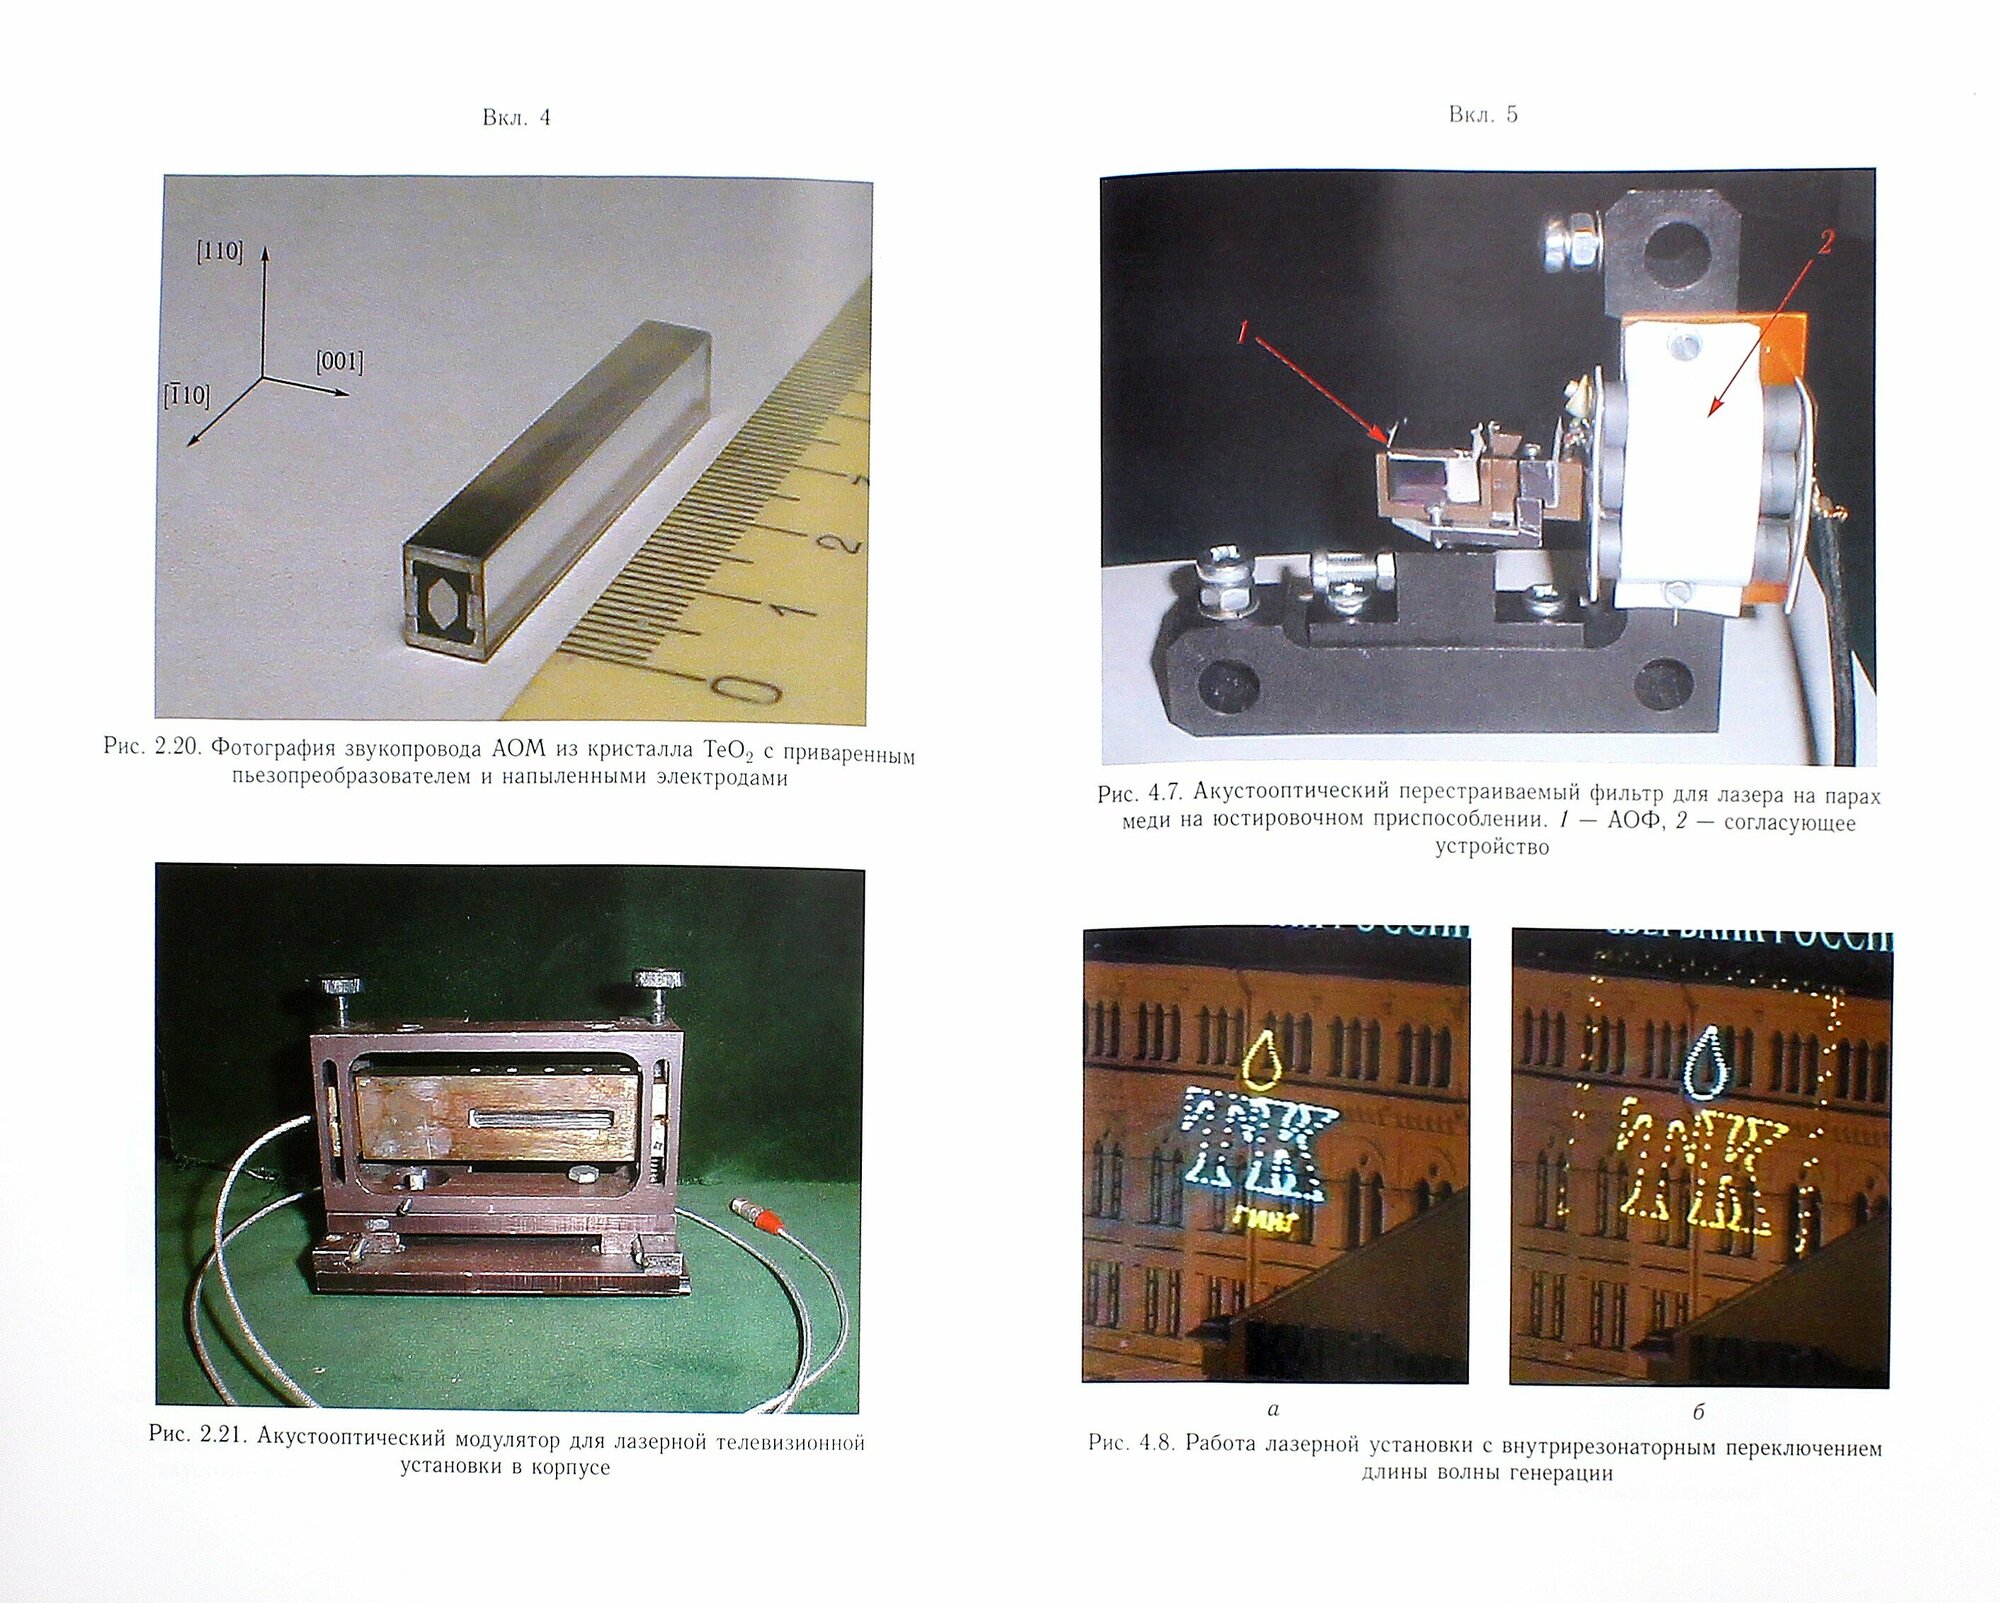 Акустооптические лазерные системы формирования телевизионных изображений - фото №4